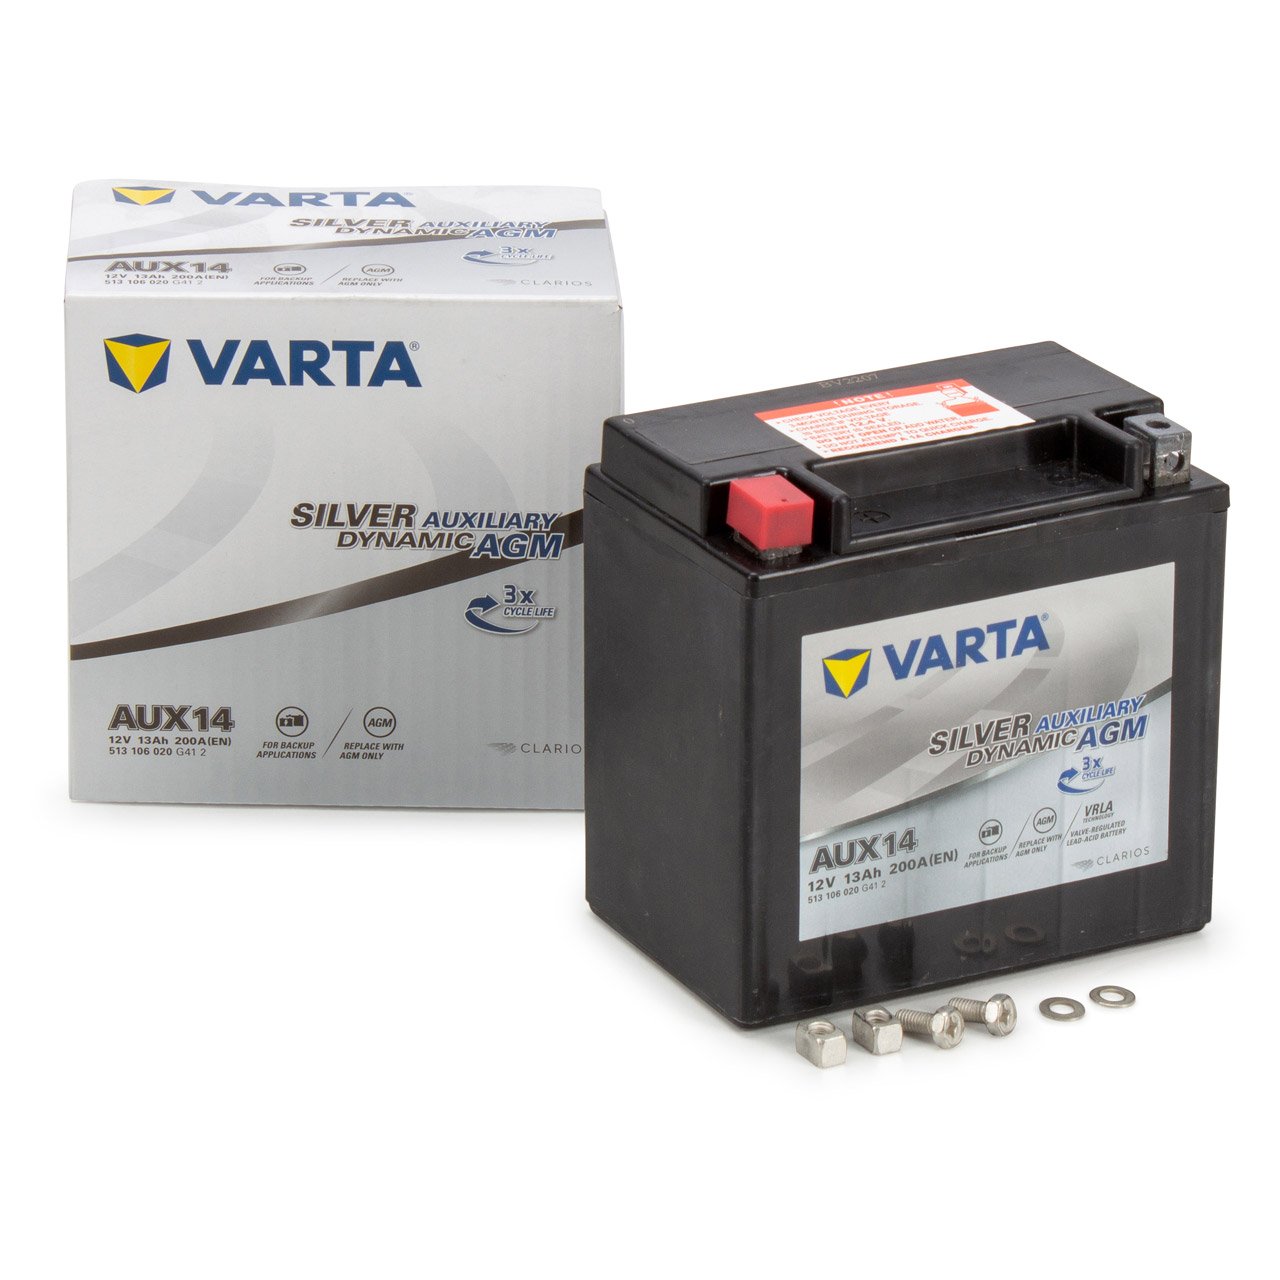 VARTA Starterbatterien / Autobatterien - 513106020G412 